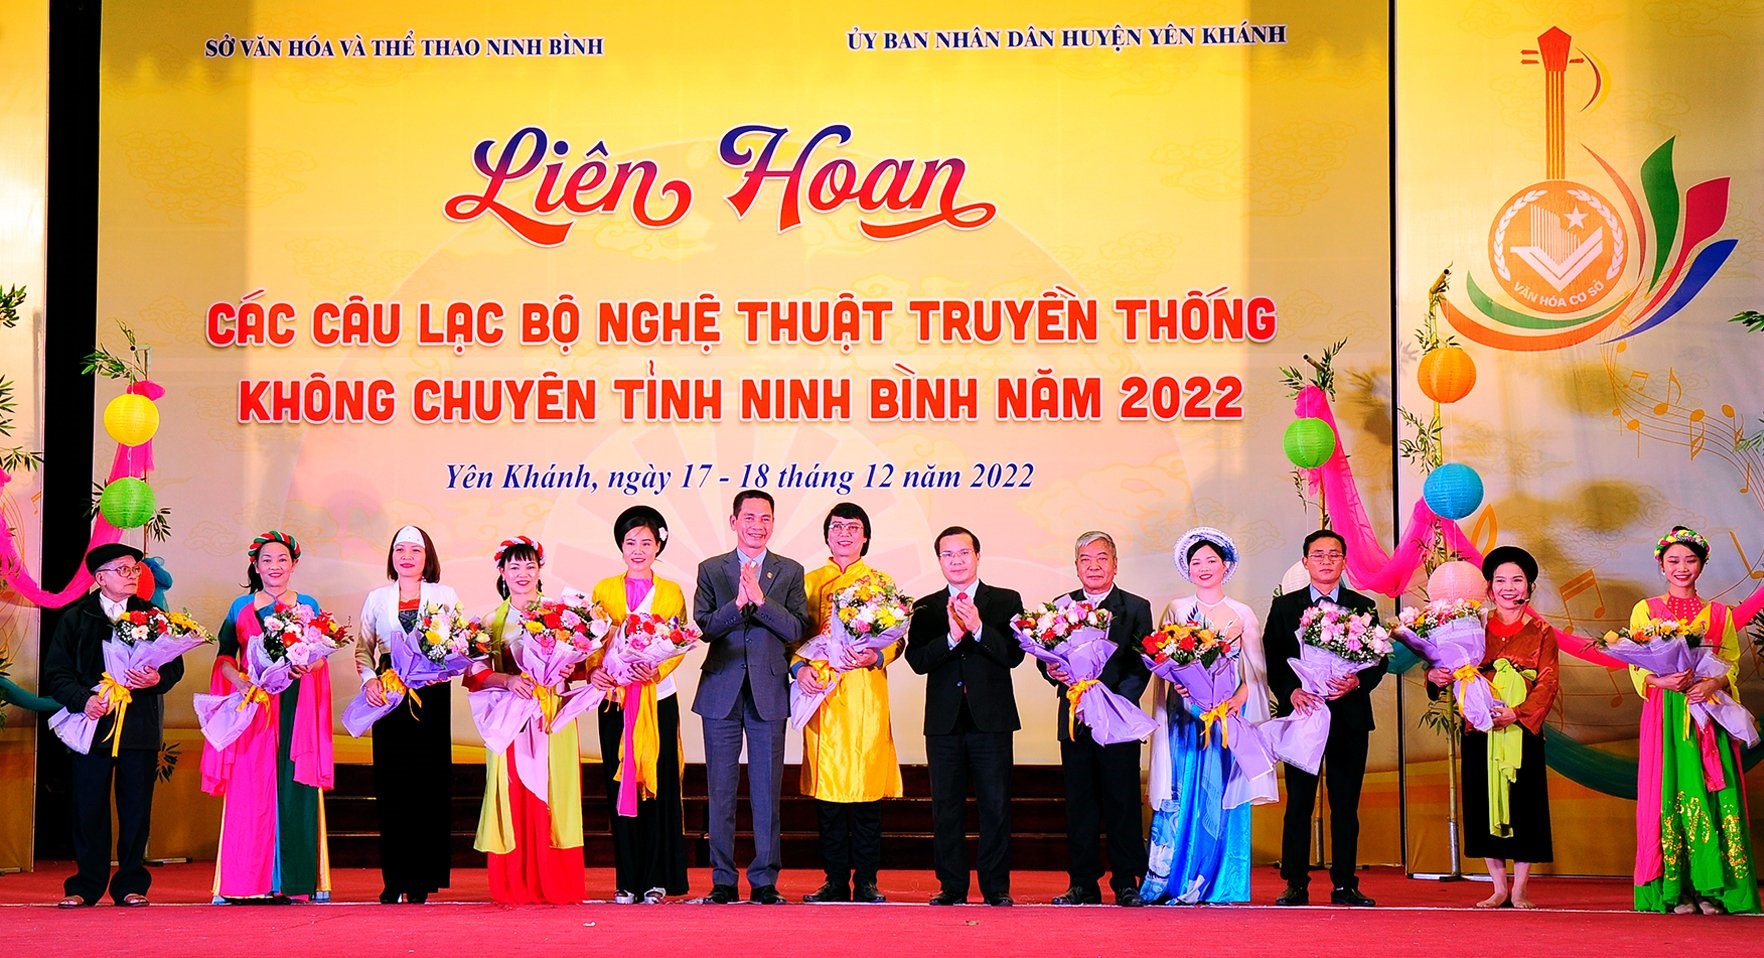 Liên hoan các câu lạc bộ nghệ thuật truyền thống không chuyên tỉnh Ninh Bình năm 2022.